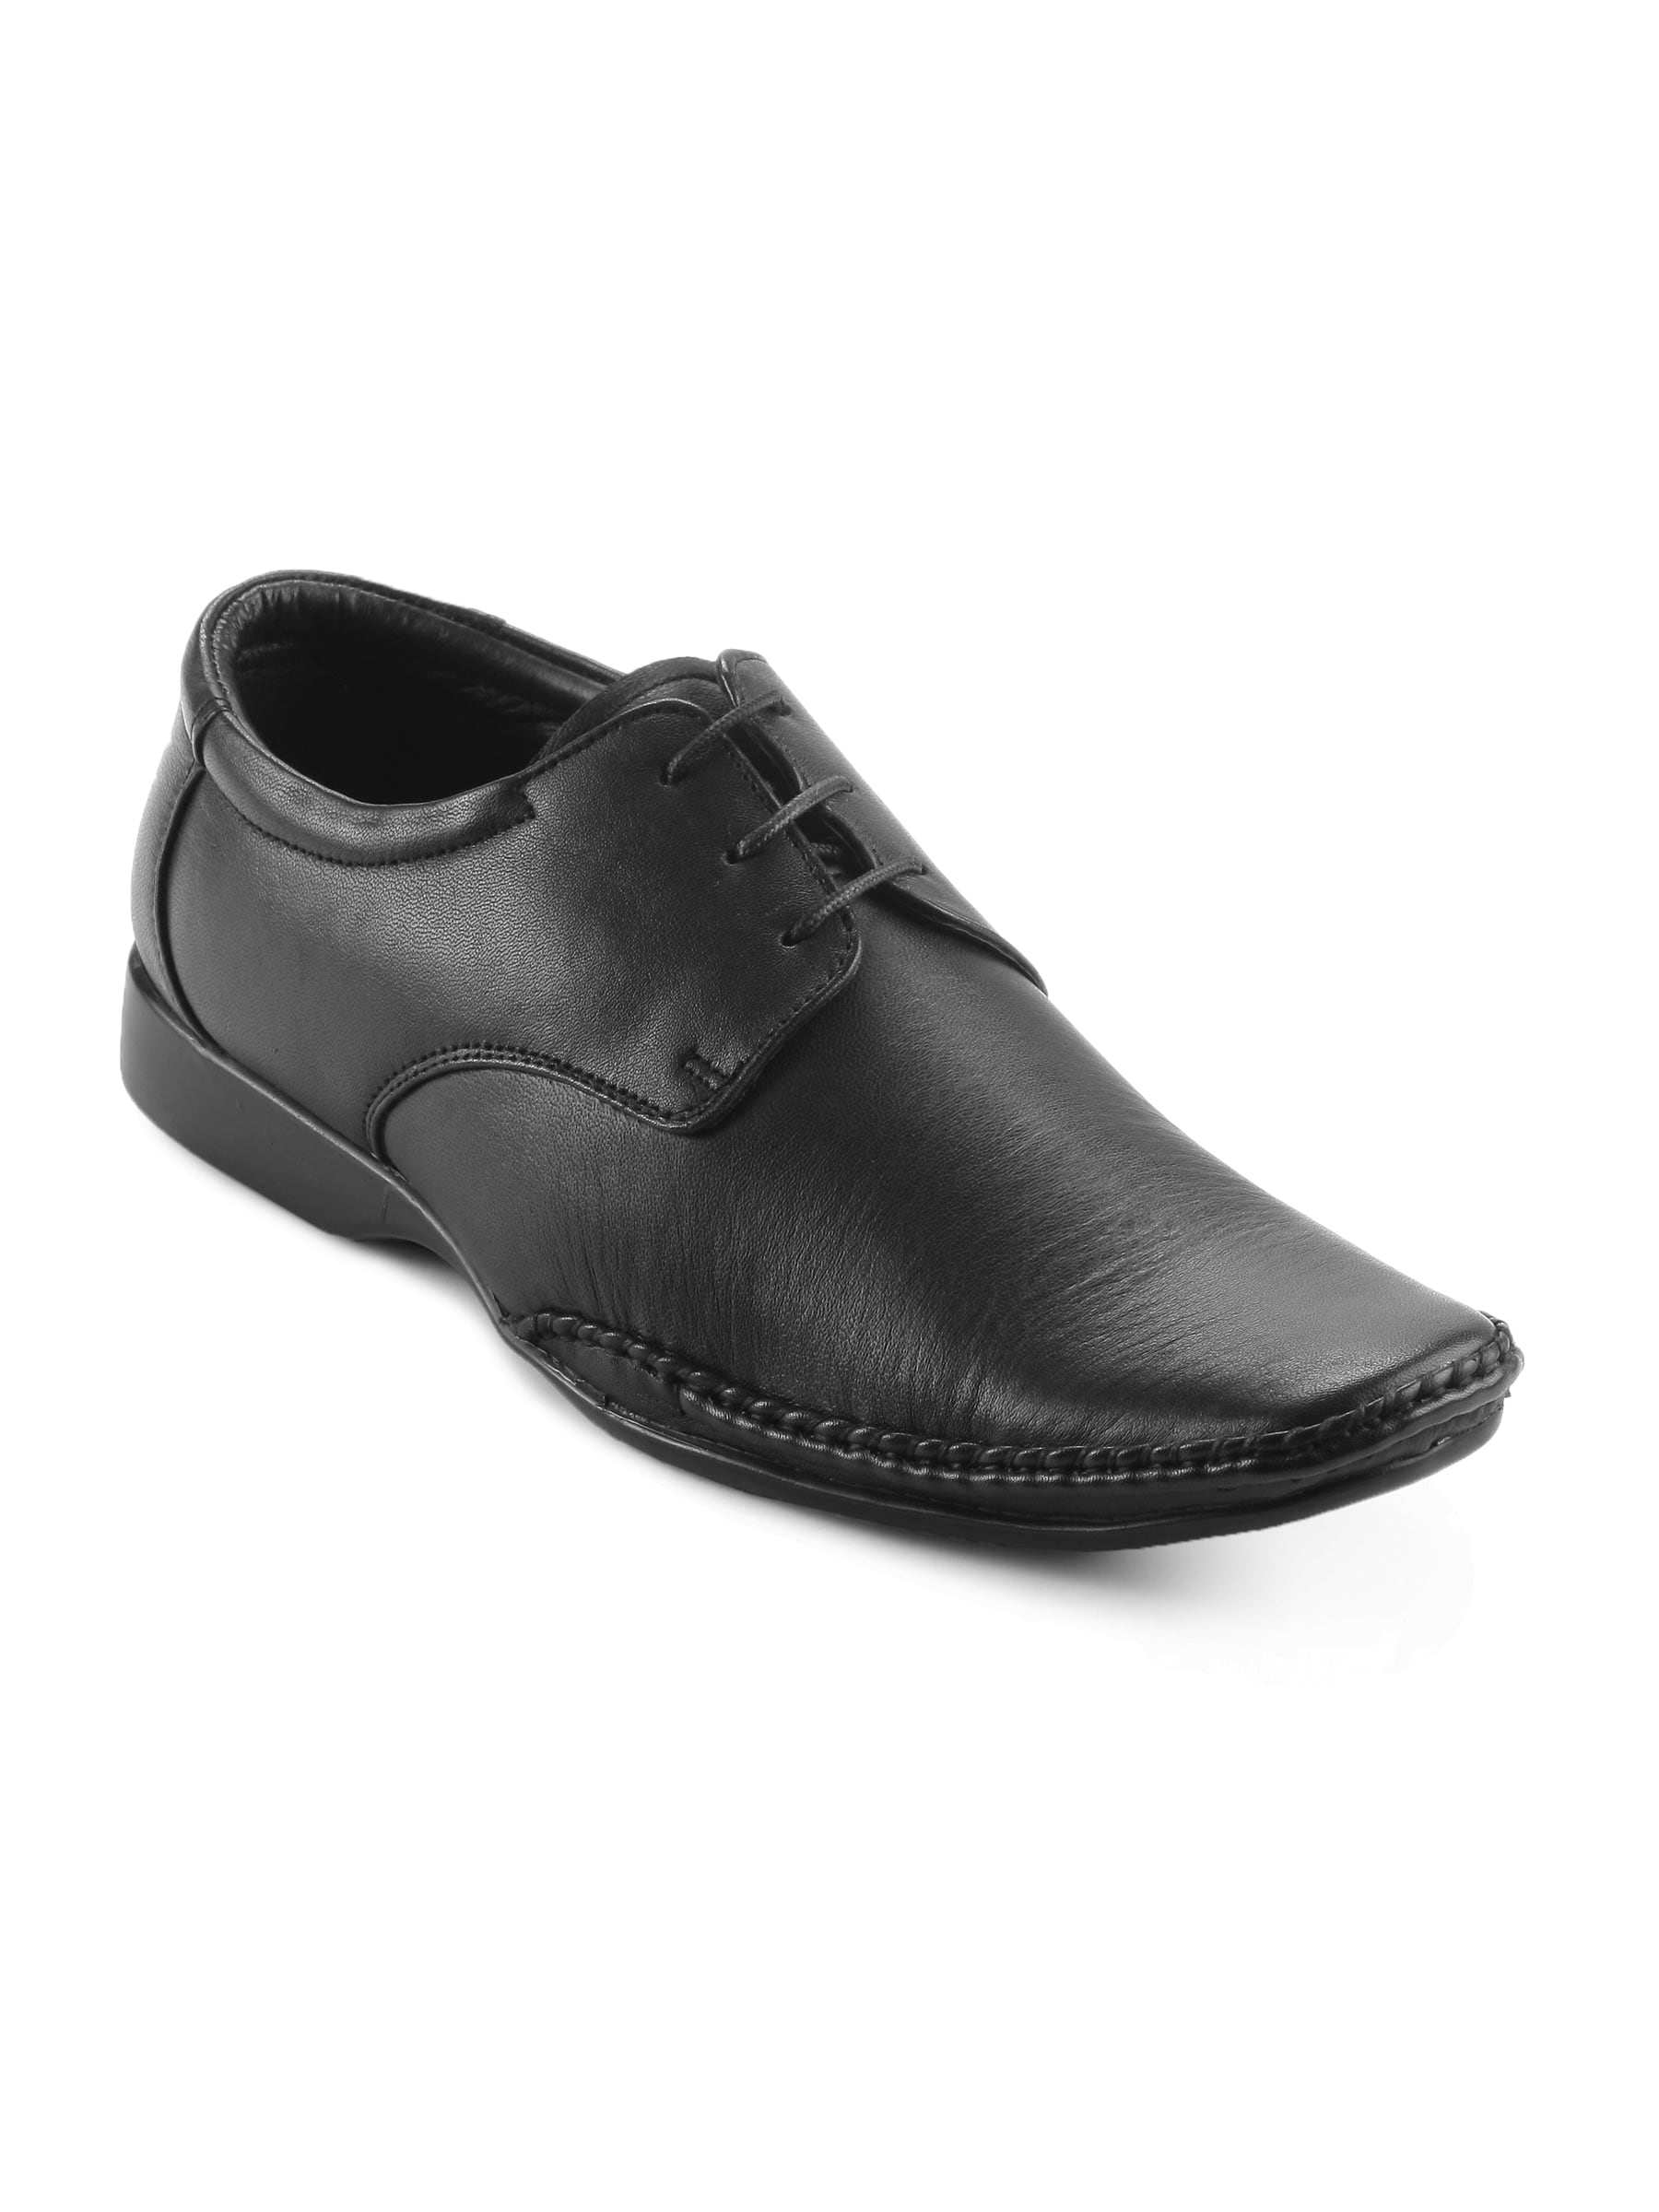 Franco Leone Men Formal Black Shoes